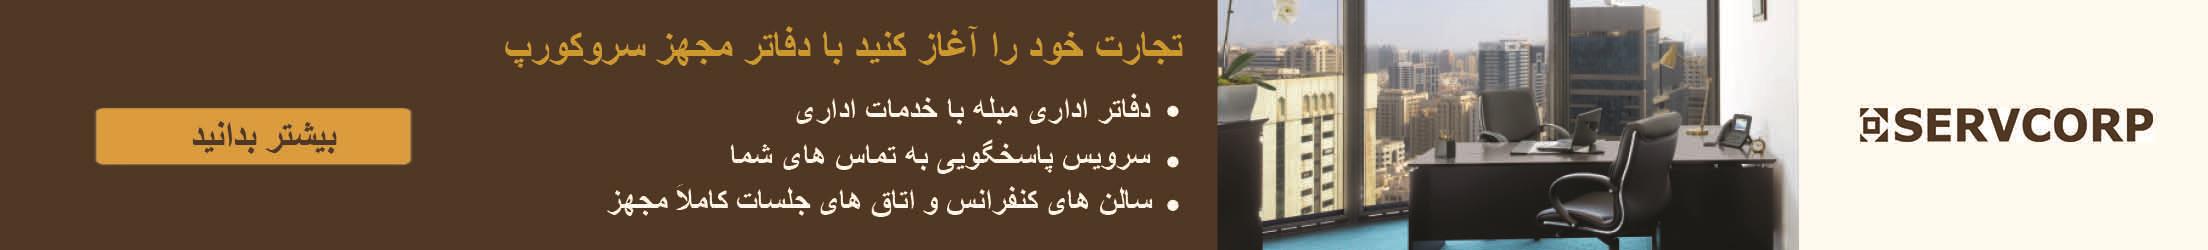 افتتاح 46پروژه دربخش کشاورزی به مناسبت هفته دولت دراستان چهارمحال وبختیاری